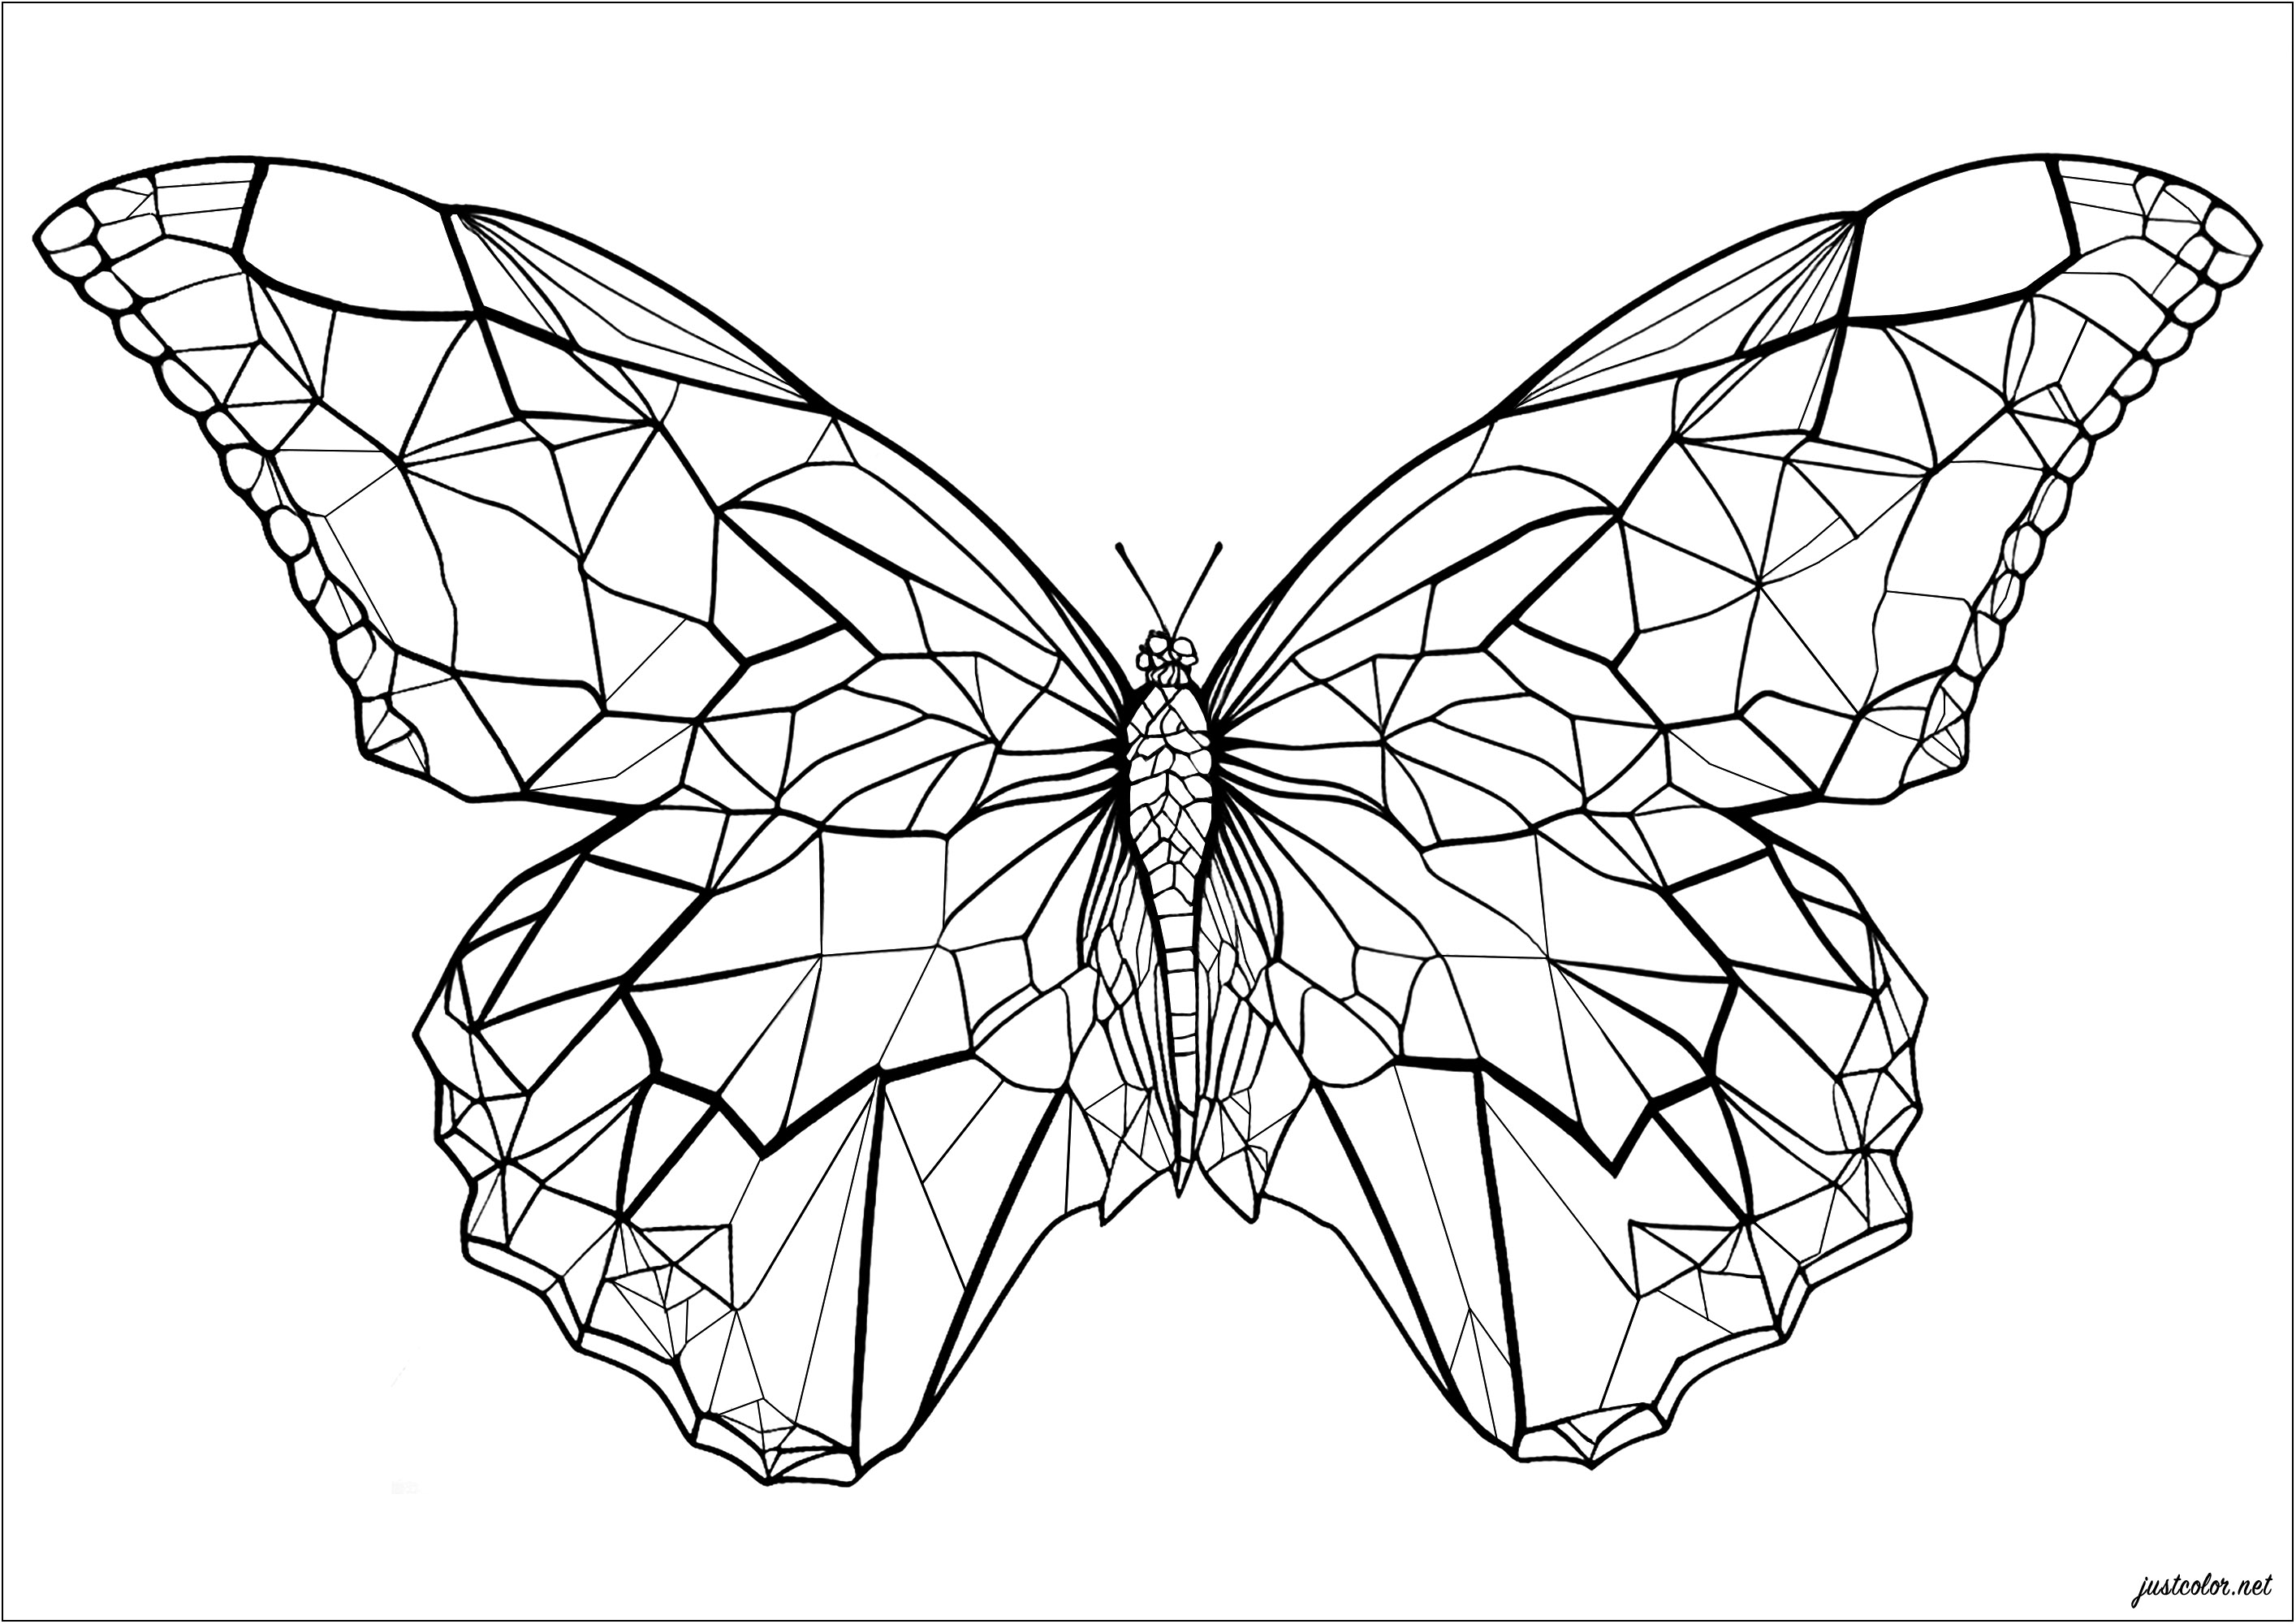 Uma borboleta com asas angulares e geométricas. Colorir cada forma geométrica das asas desta bela borboleta! Gradientes de cores, cores do arco-íris ... Simetria ou não ... cabe-lhe a si escolher o seu estilo, as possibilidades são infinitas e o resultado é certamente bonito.